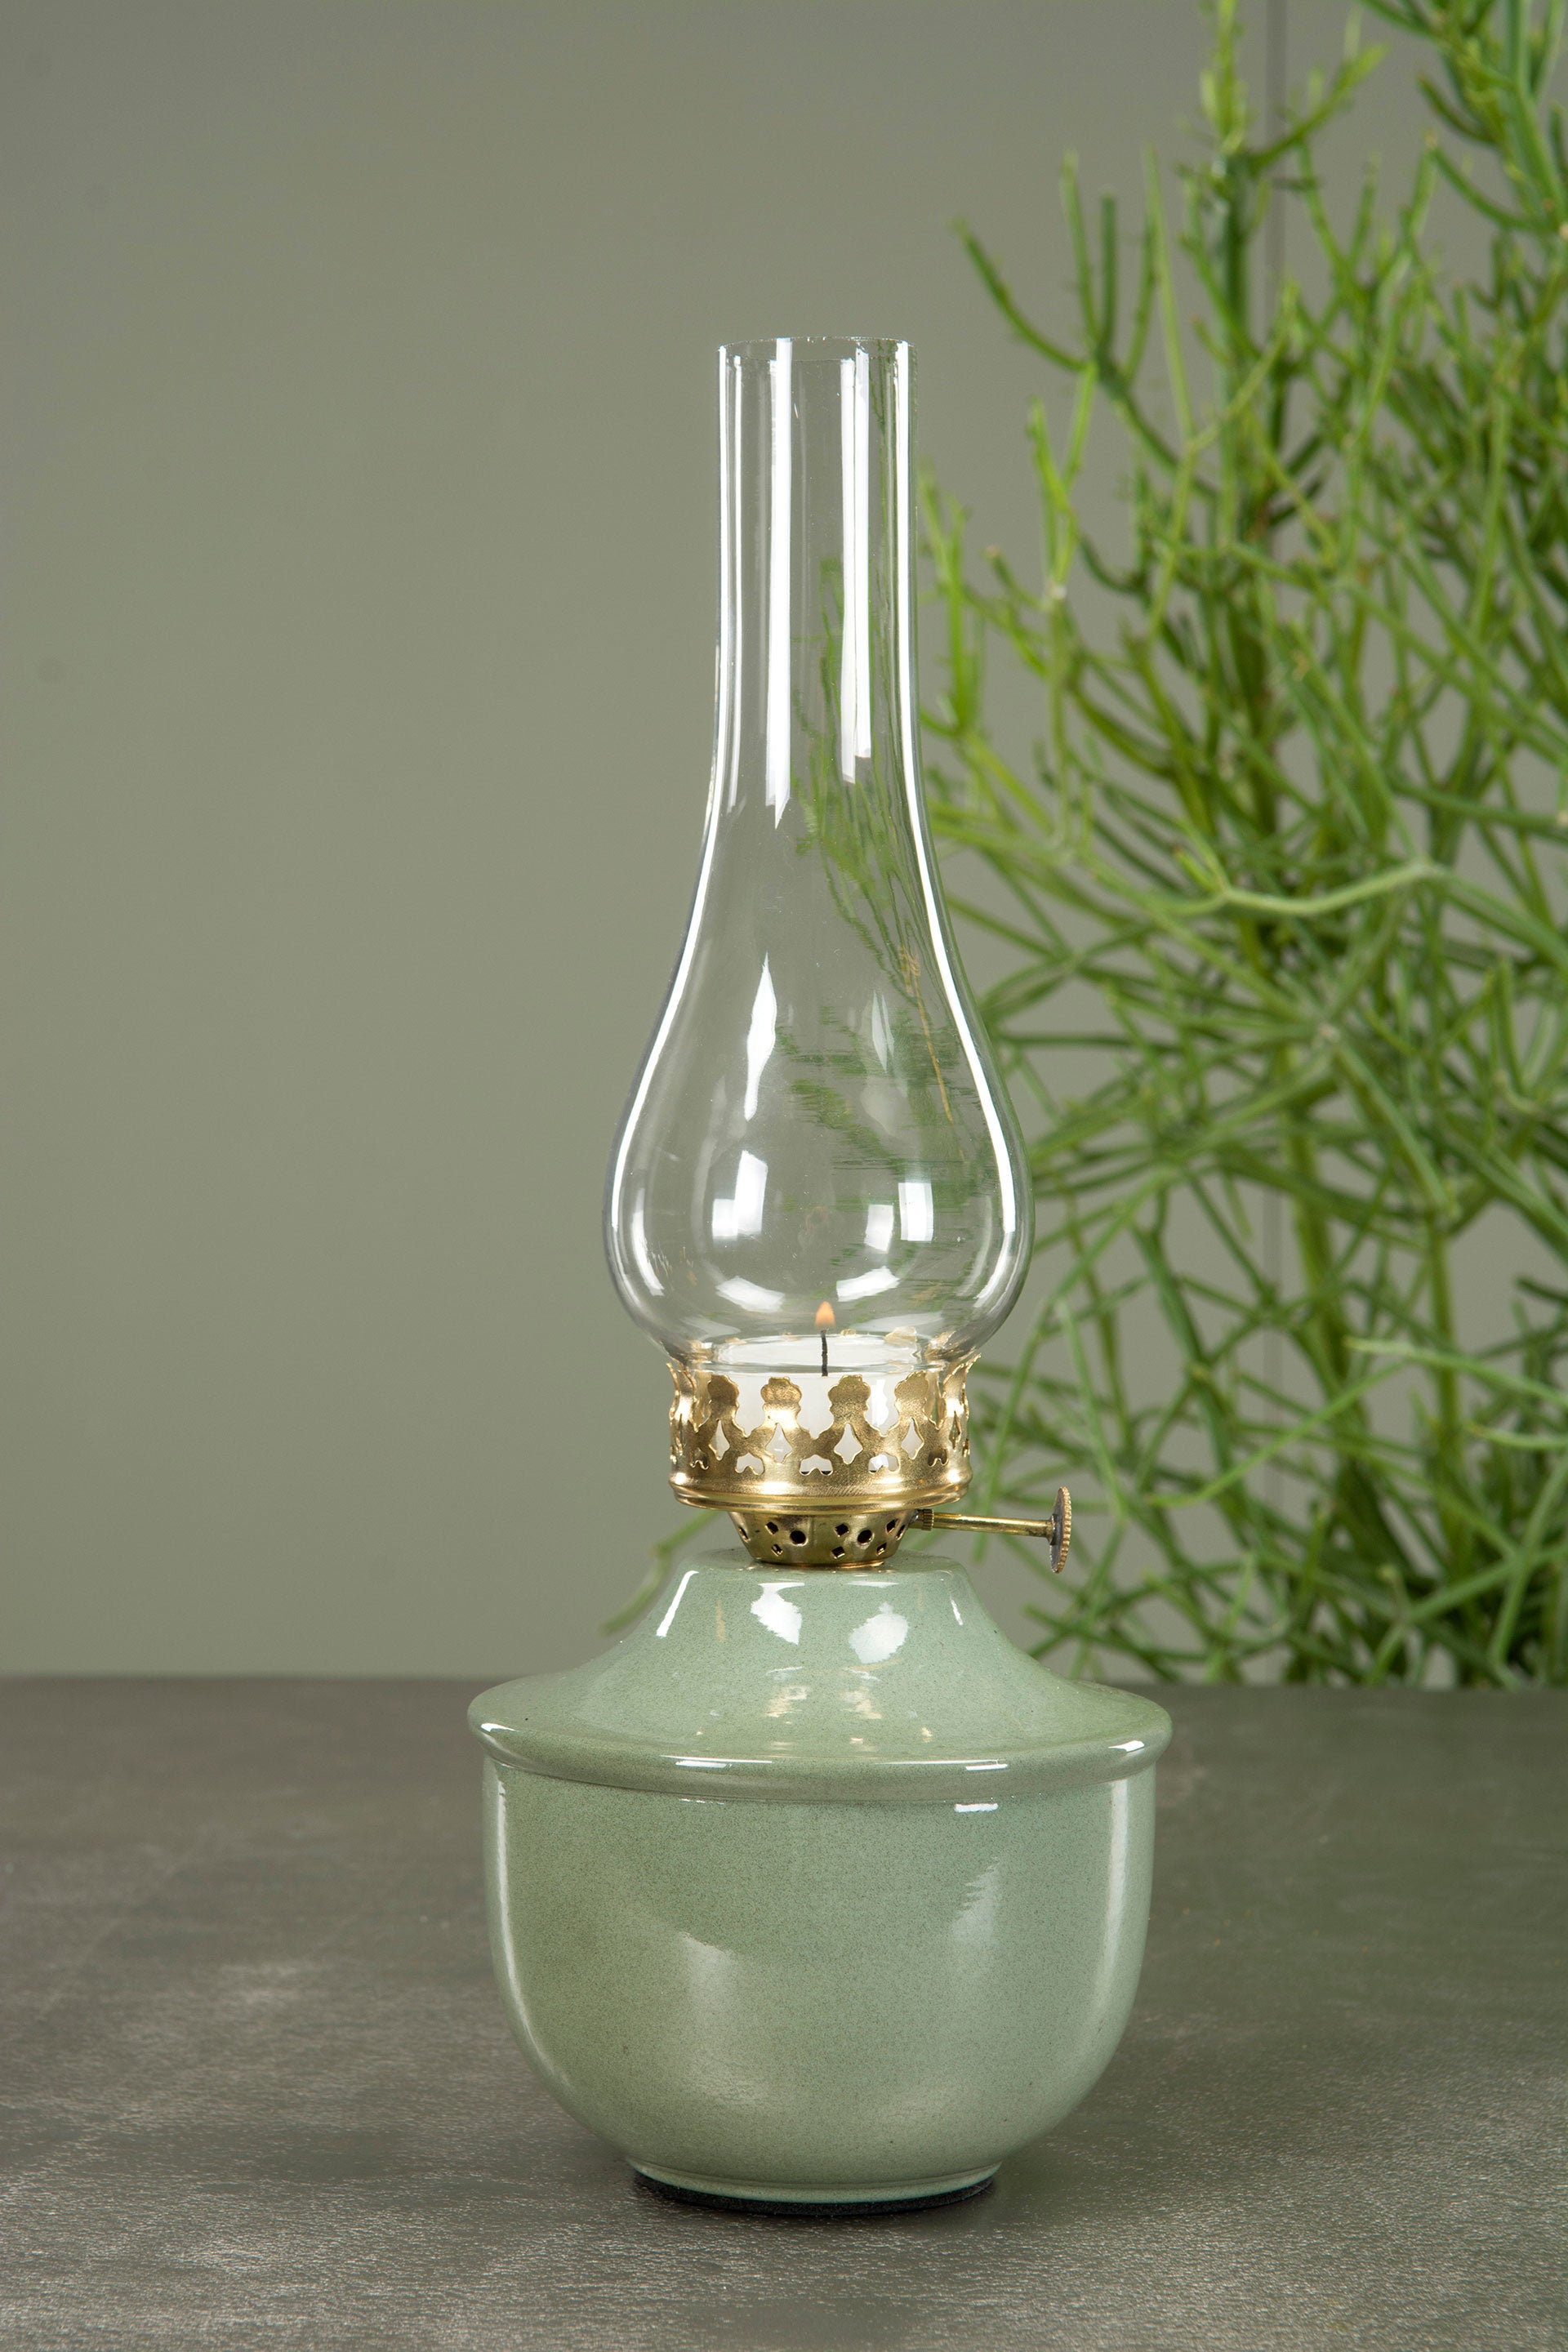 Hög och vacker lampa i en gammaldags stil.  Till värmeljus. Ingår ej.  Mått: Ø13x34cm  Material: Emalj, Metall & Glas  Färg: Emalj Grön